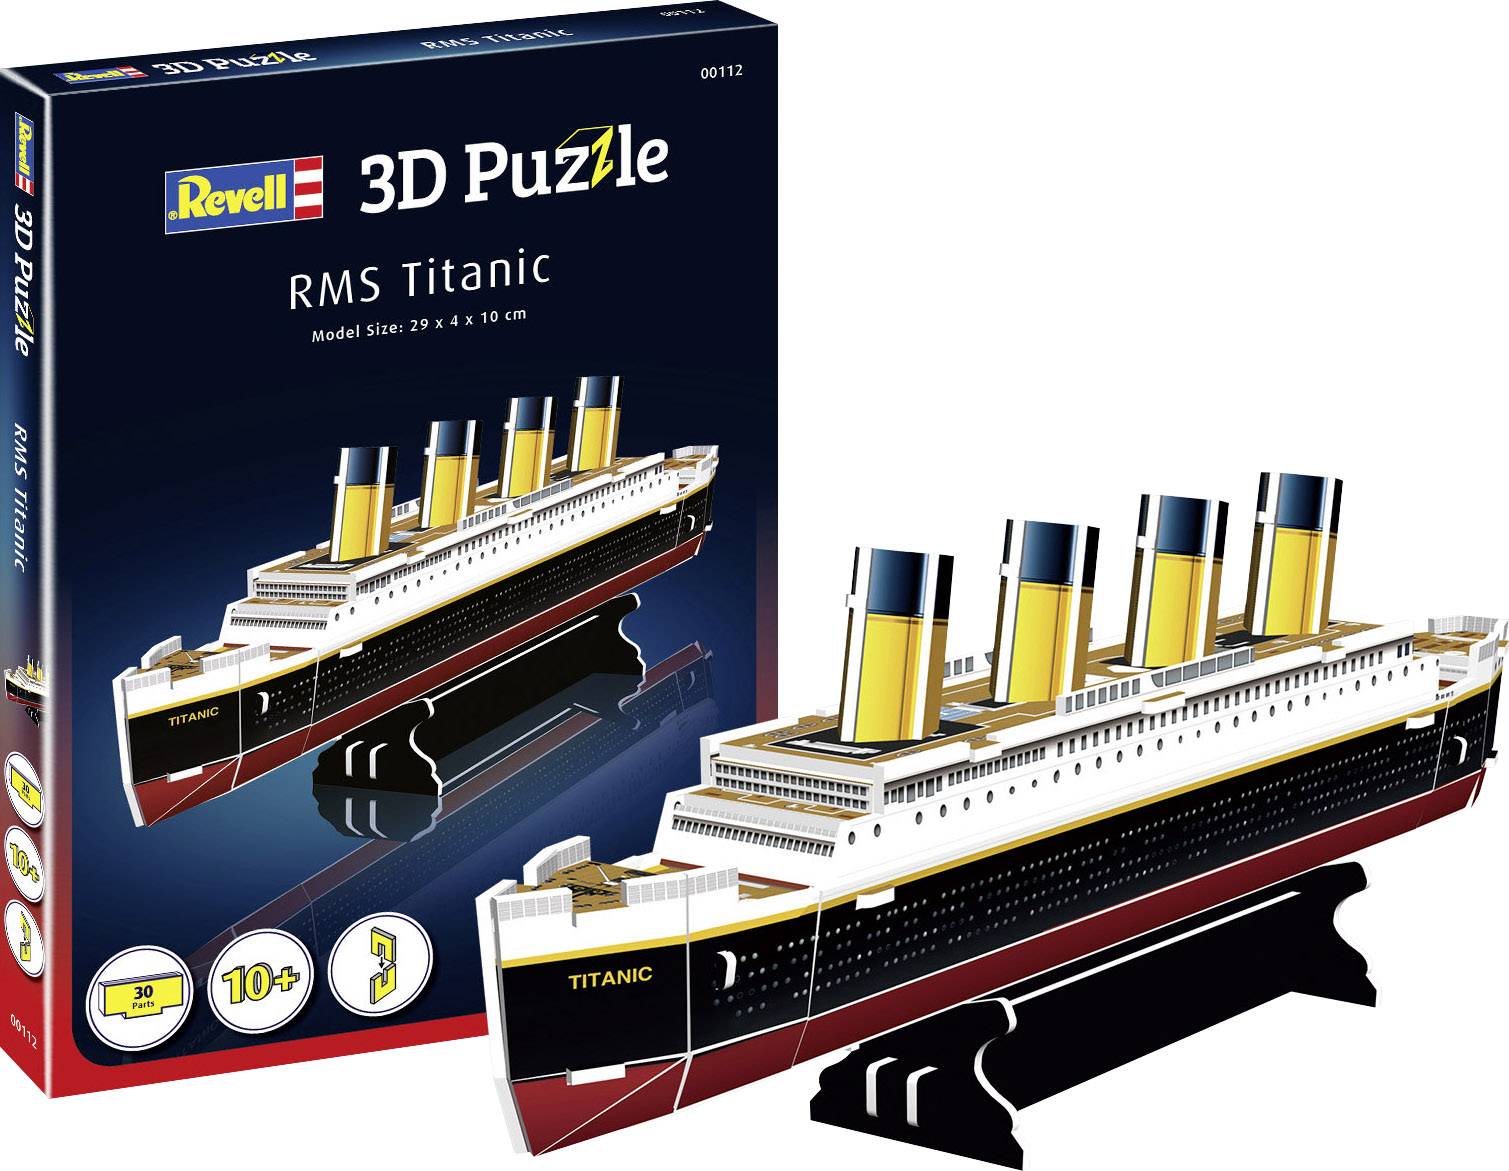 3D-Puzzle RMS Titanic 3D-Puzzle RMS Titanic 1 pc(s) | Conrad.com